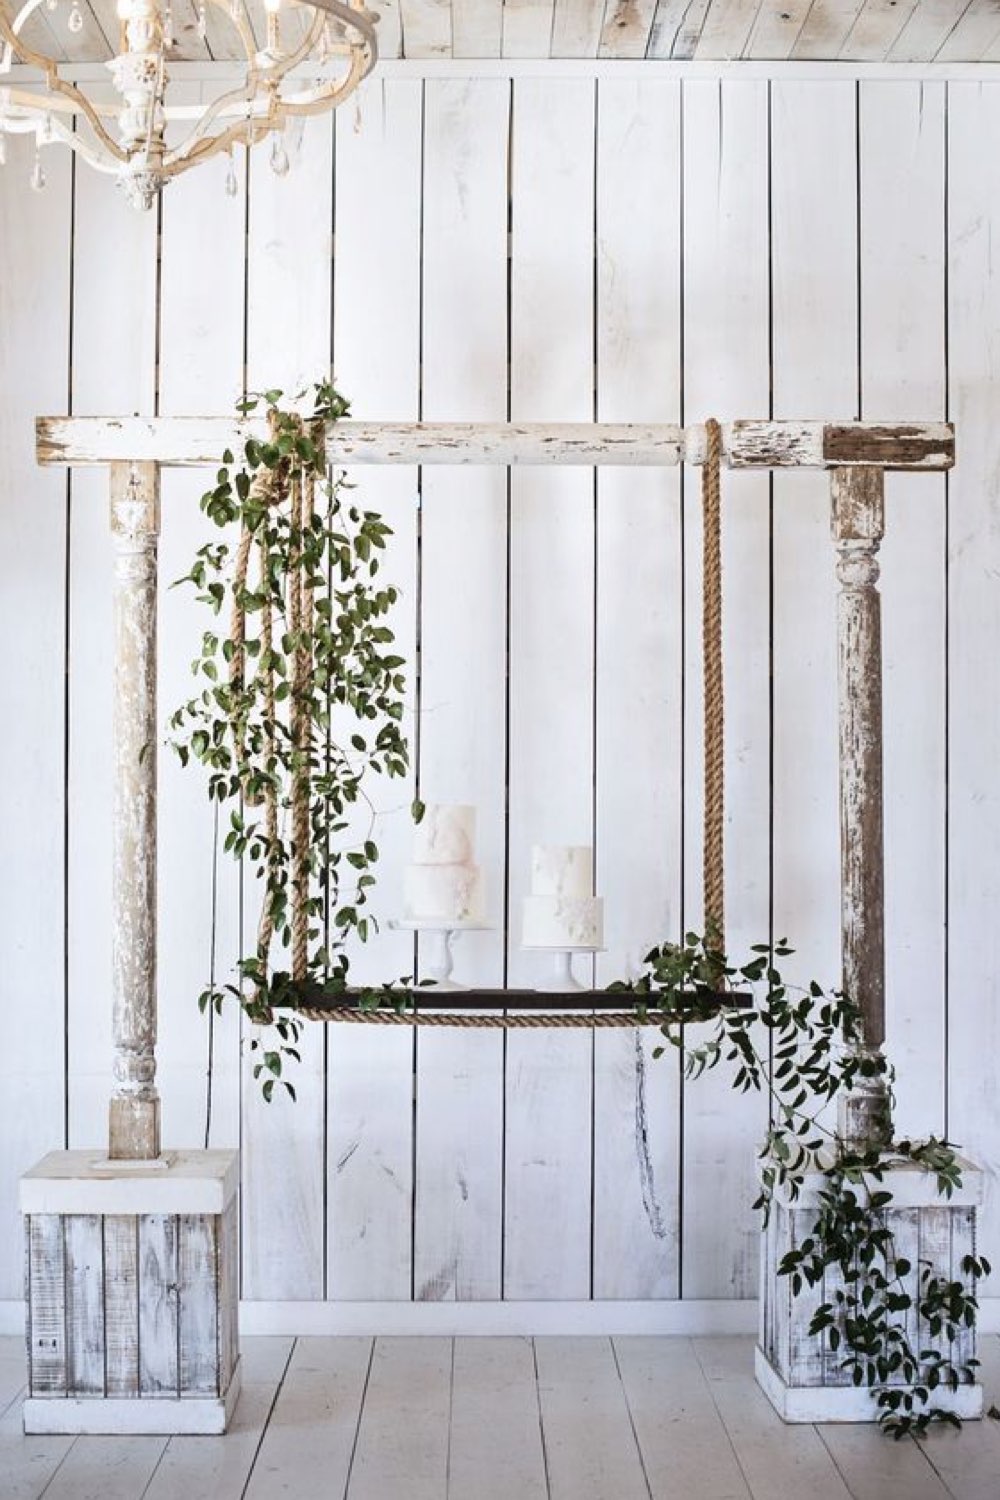 decoration mariage champetre romantique arche faite de récup bois balançoire fleurs